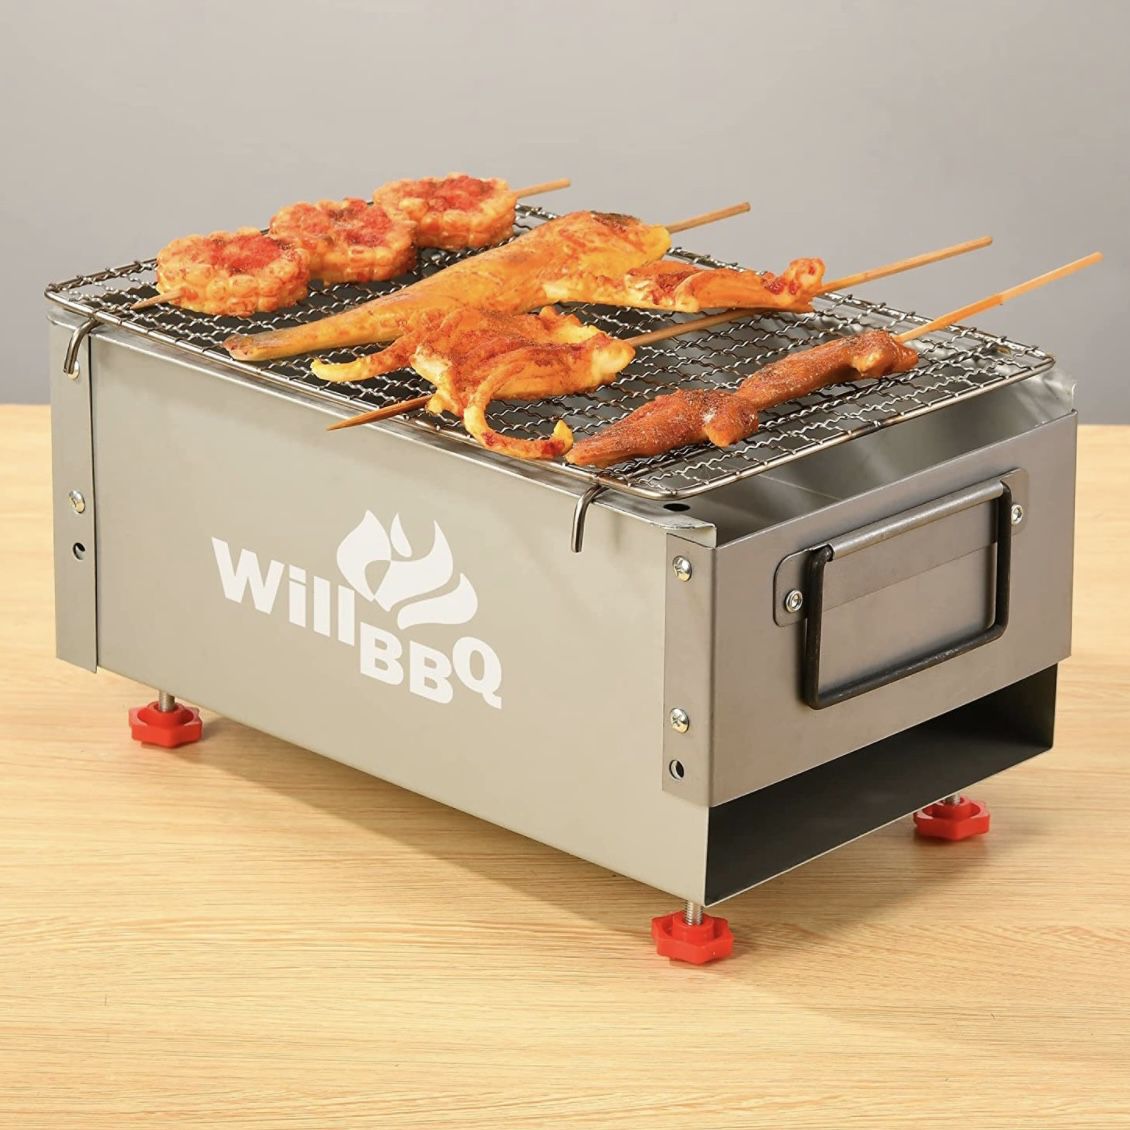 WillBBQ charcoal grill 